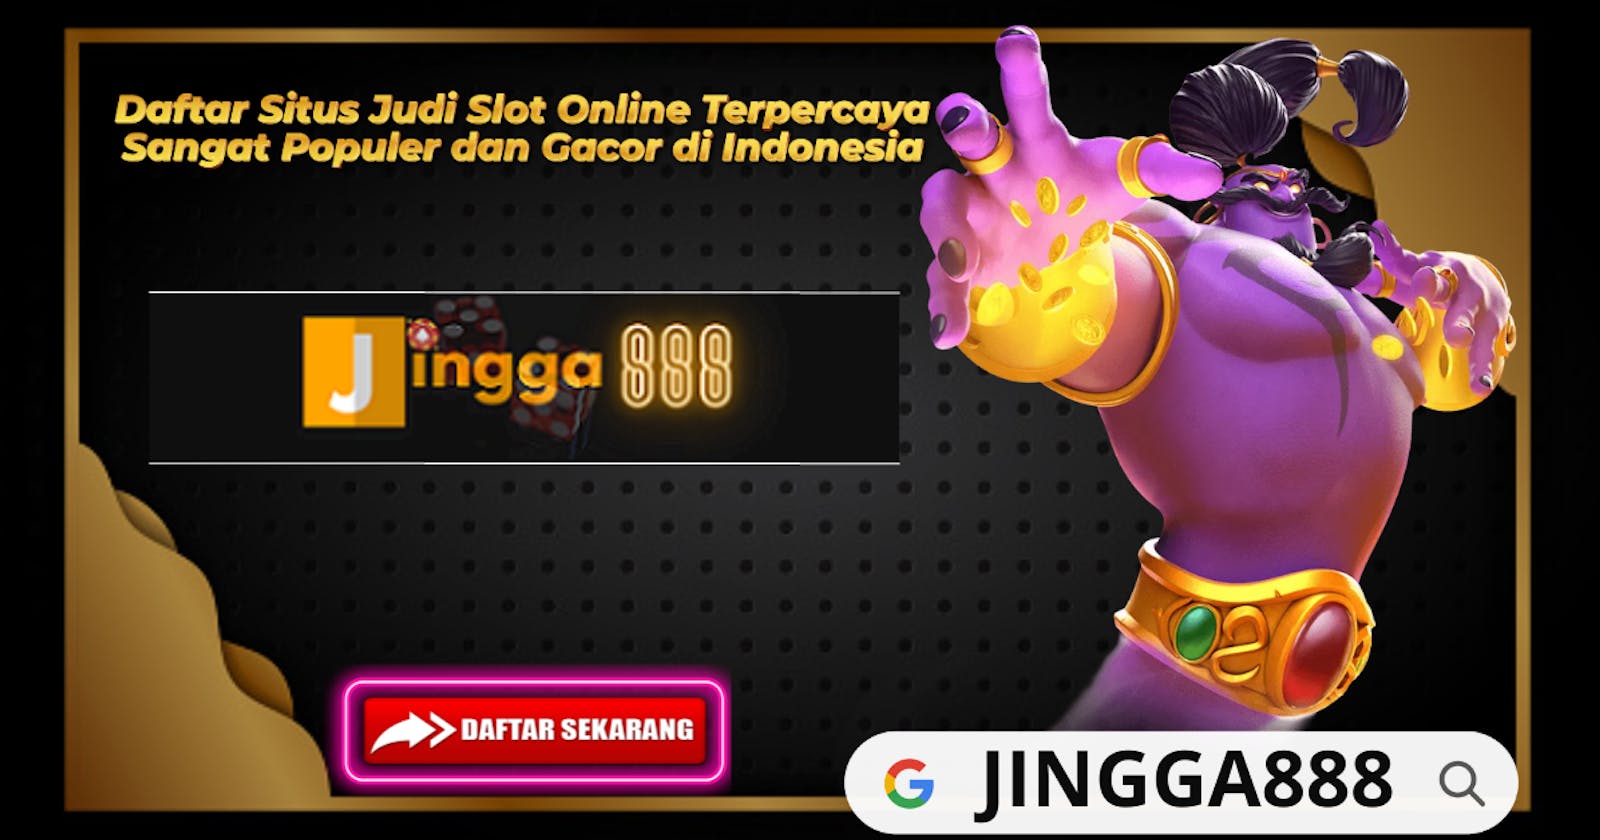 Daftar Situs Judi Slot Online Terpercaya Populer di Indonesia